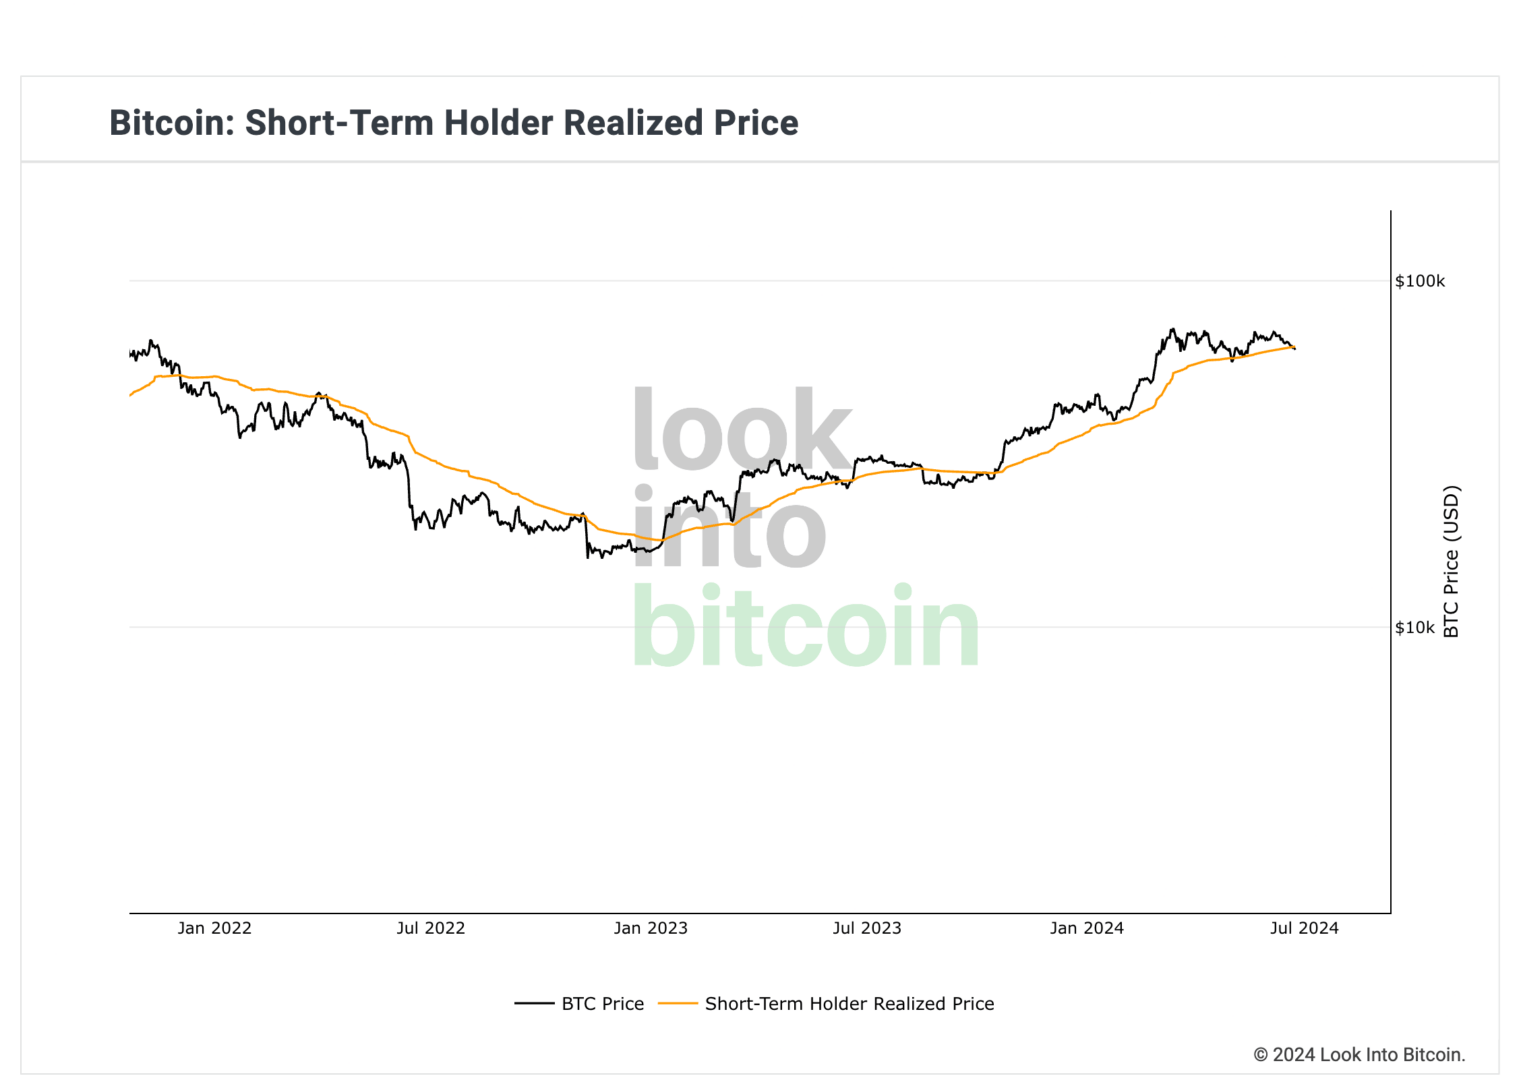 Le cours du Bitcoin évolue en dessous du prix réalisé des détenteurs à court terme. 